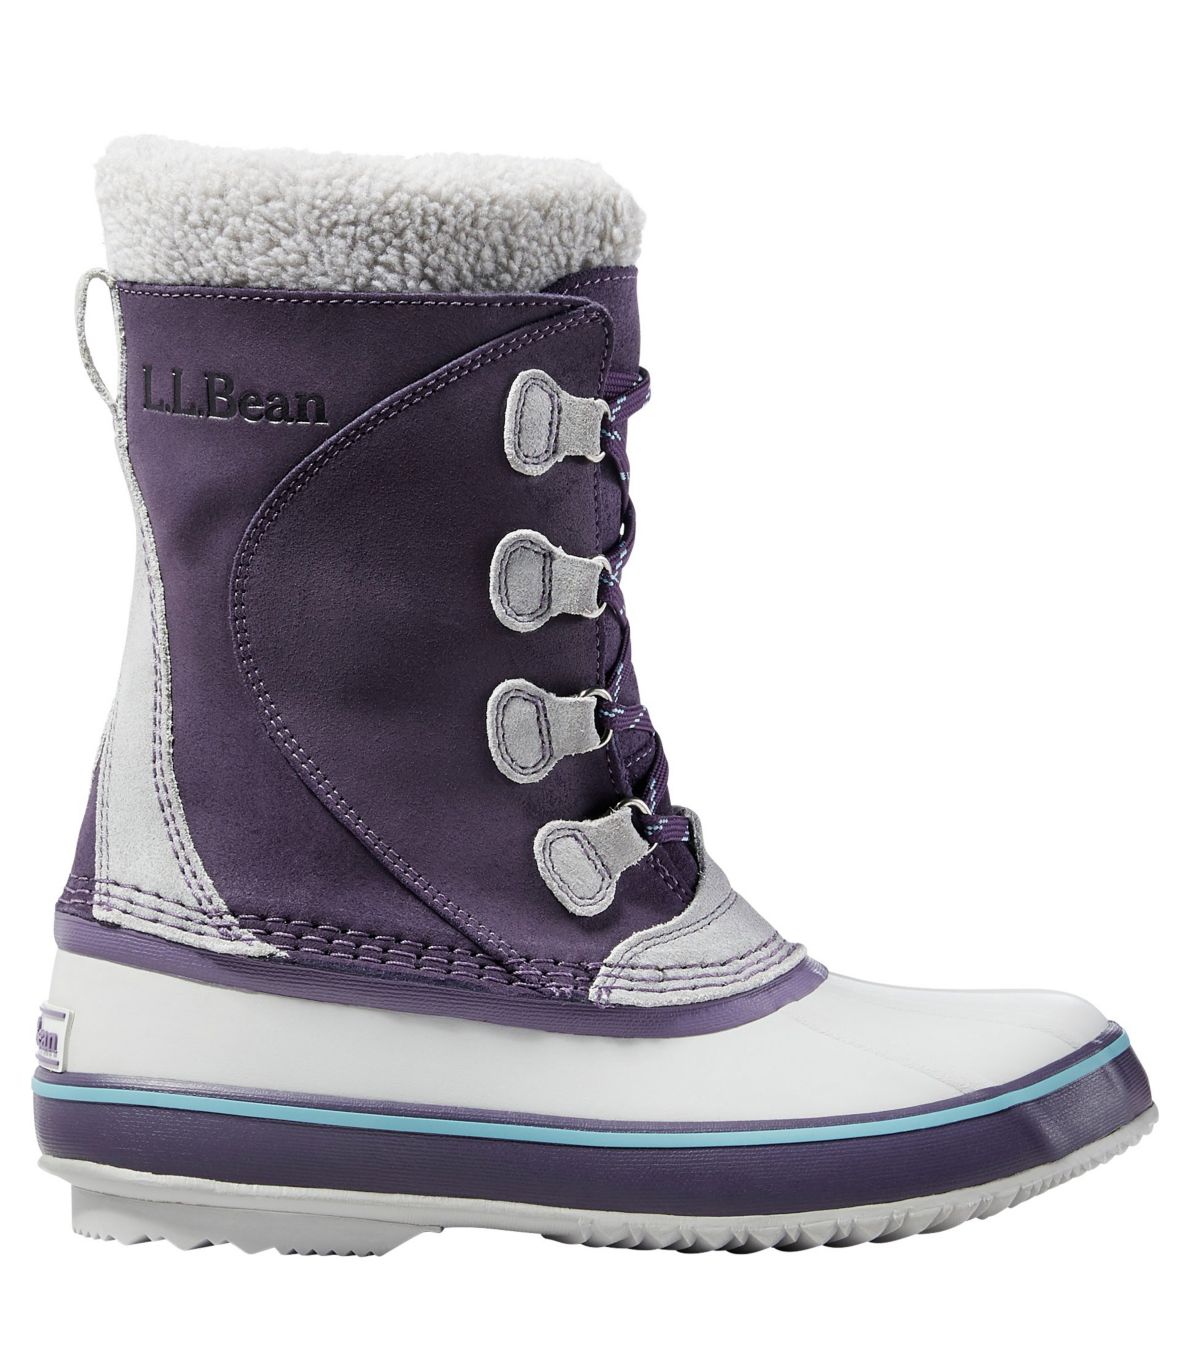 Women's L.L.Bean Snow Boots, Lace-Up